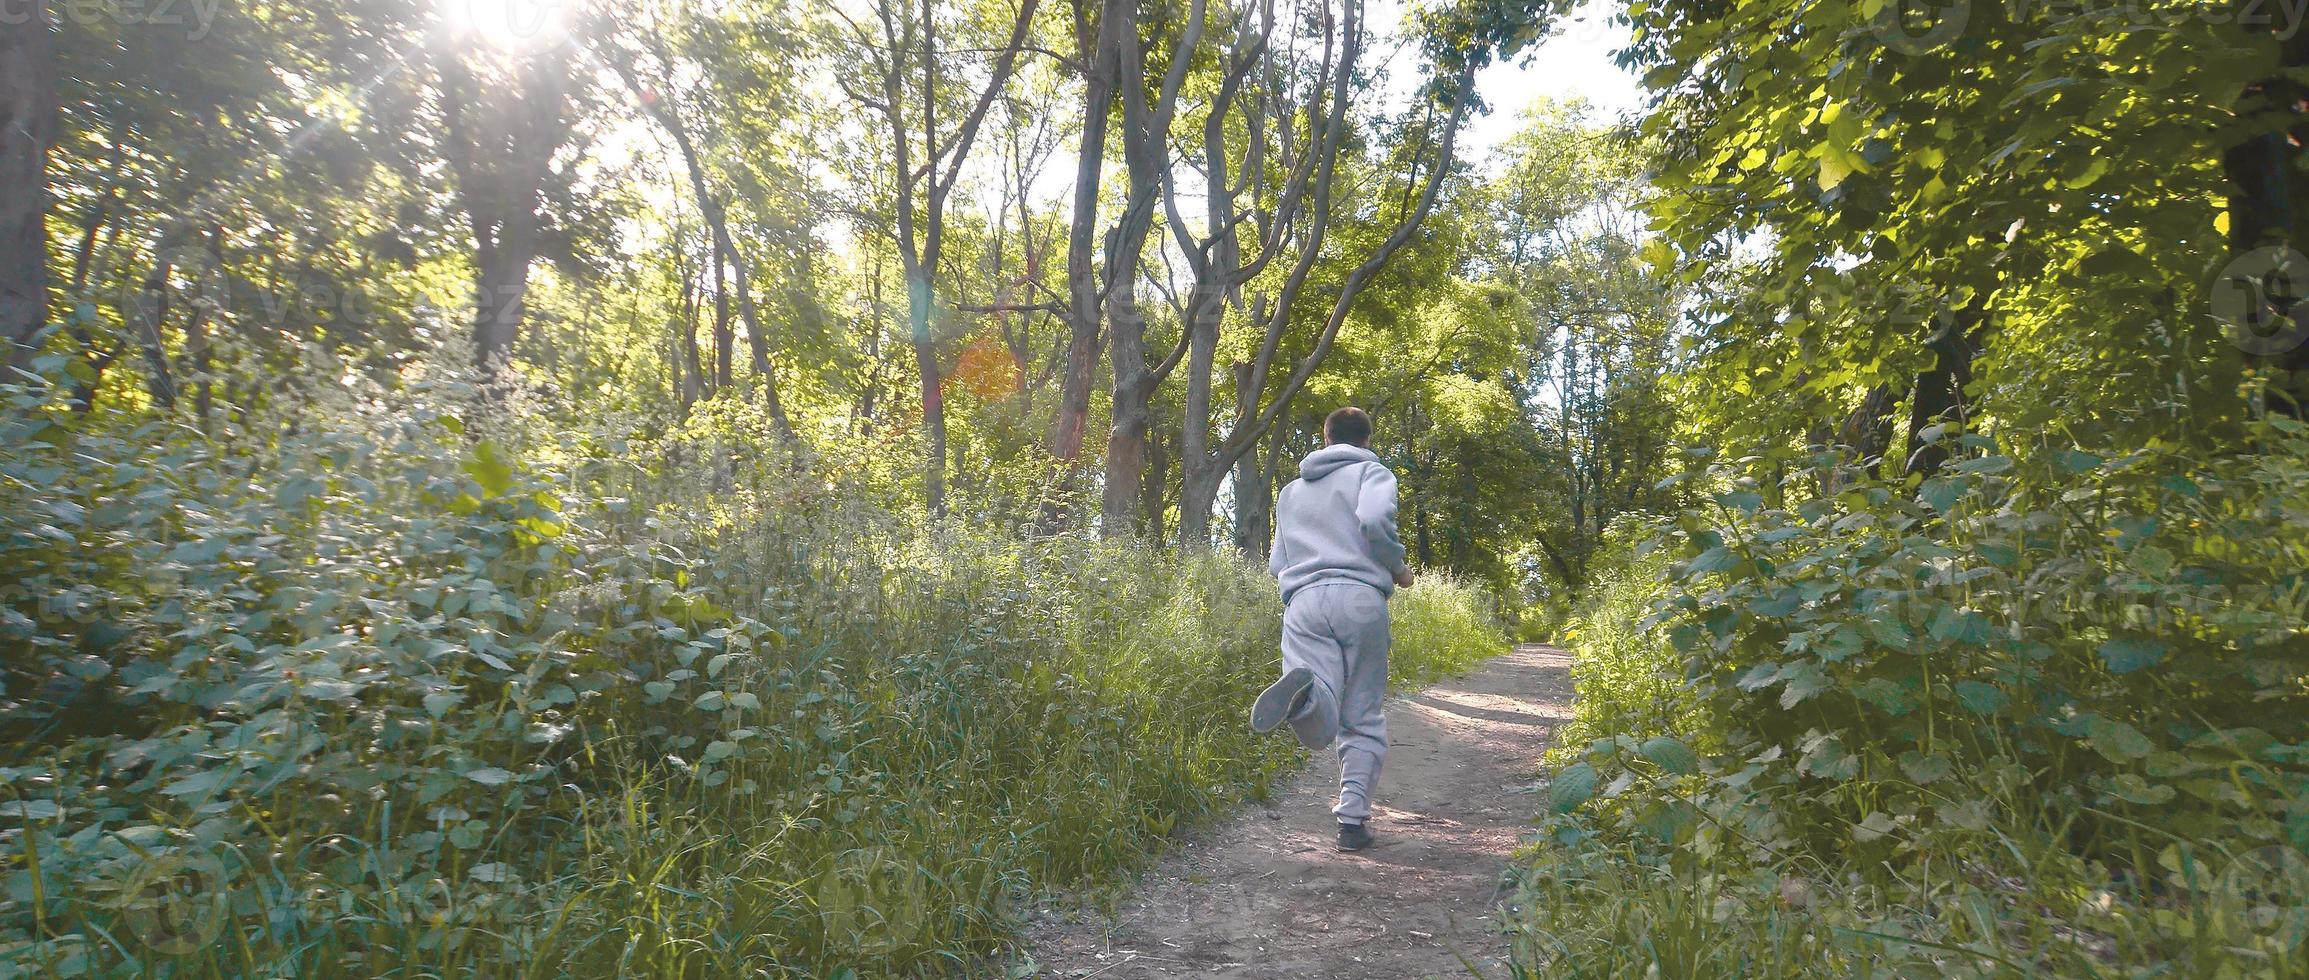 un joven con un traje deportivo gris corre por el camino entre los foto